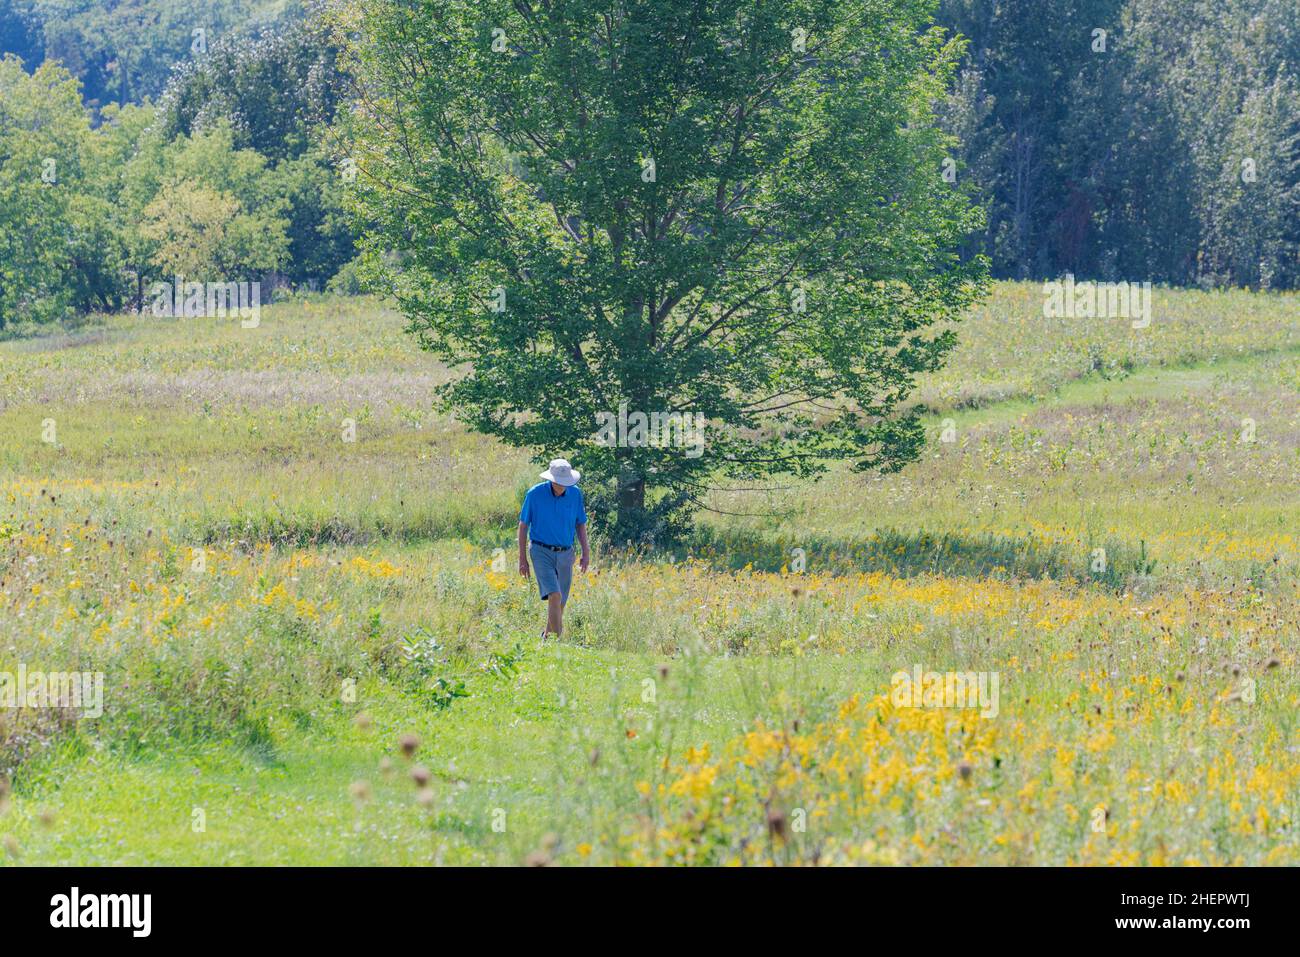 Un individu d'âge moyen peut faire de l'exercice en plein air de qualité en marchant sur les sentiers d'une réserve naturelle du comté de Door, Wisconsin, lors d'une chaude journée d'automne. Banque D'Images